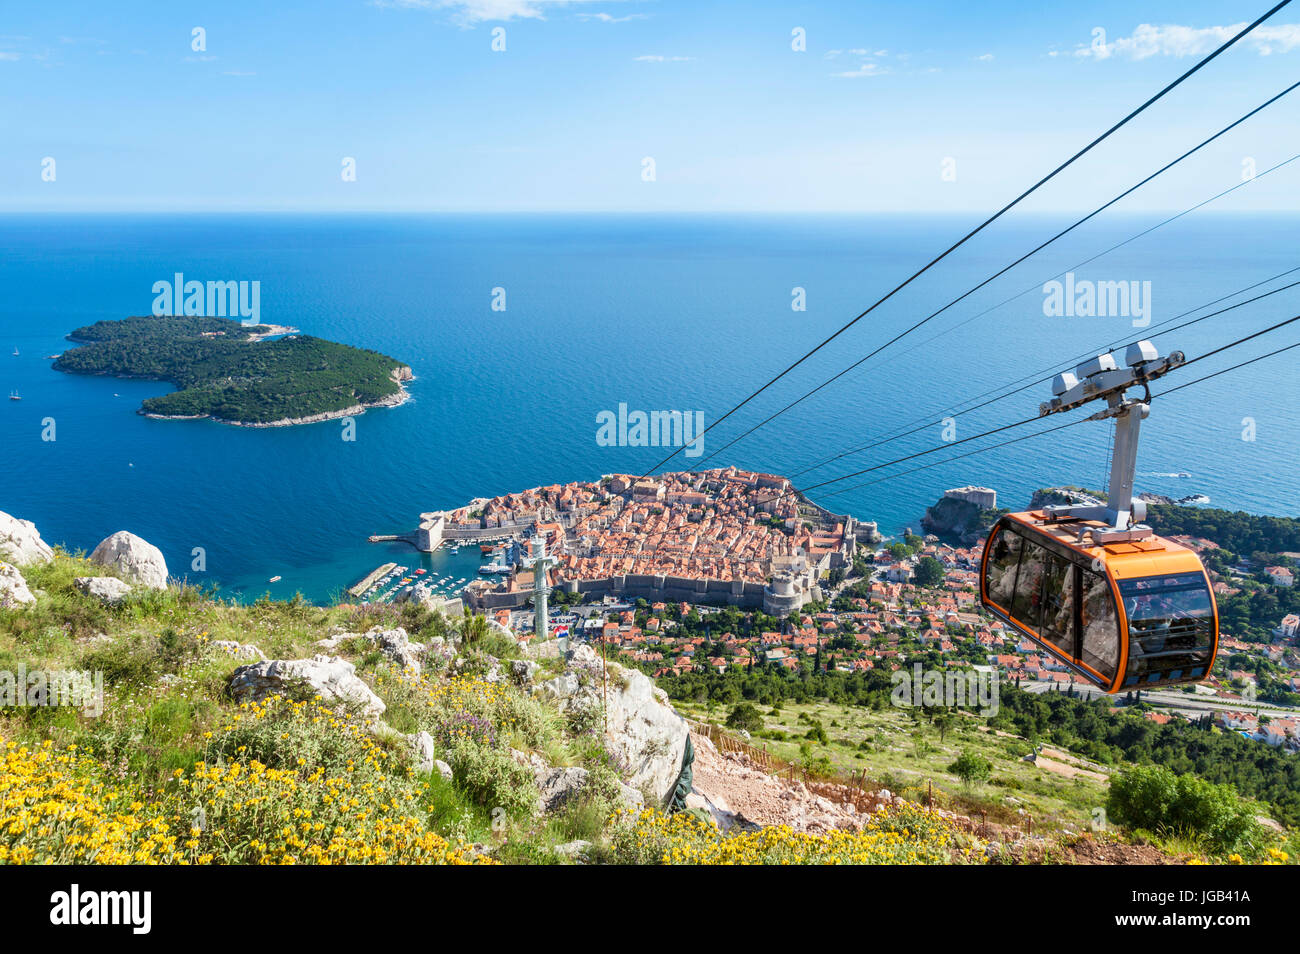 Dubrovnik Croatie côte Dalmate dubrovnik téléphérique menant au mont Srd Dubrovnik Old Town vue aérienne de l'île de Lokrum Dubrovnik, Croatie Europe Banque D'Images